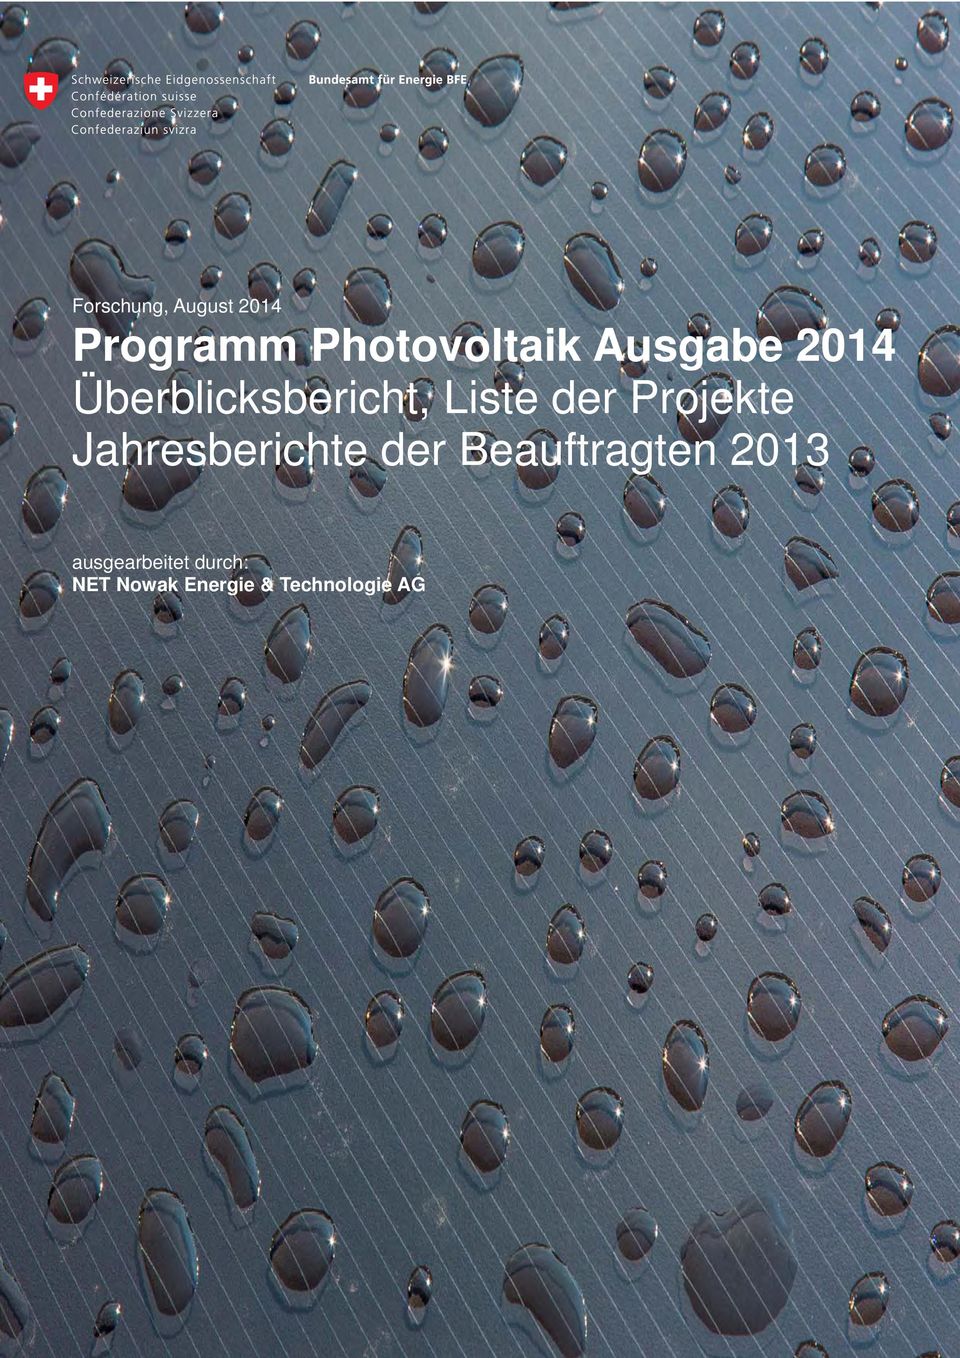 Projekte Jahresberichte der Beauftragten 2013